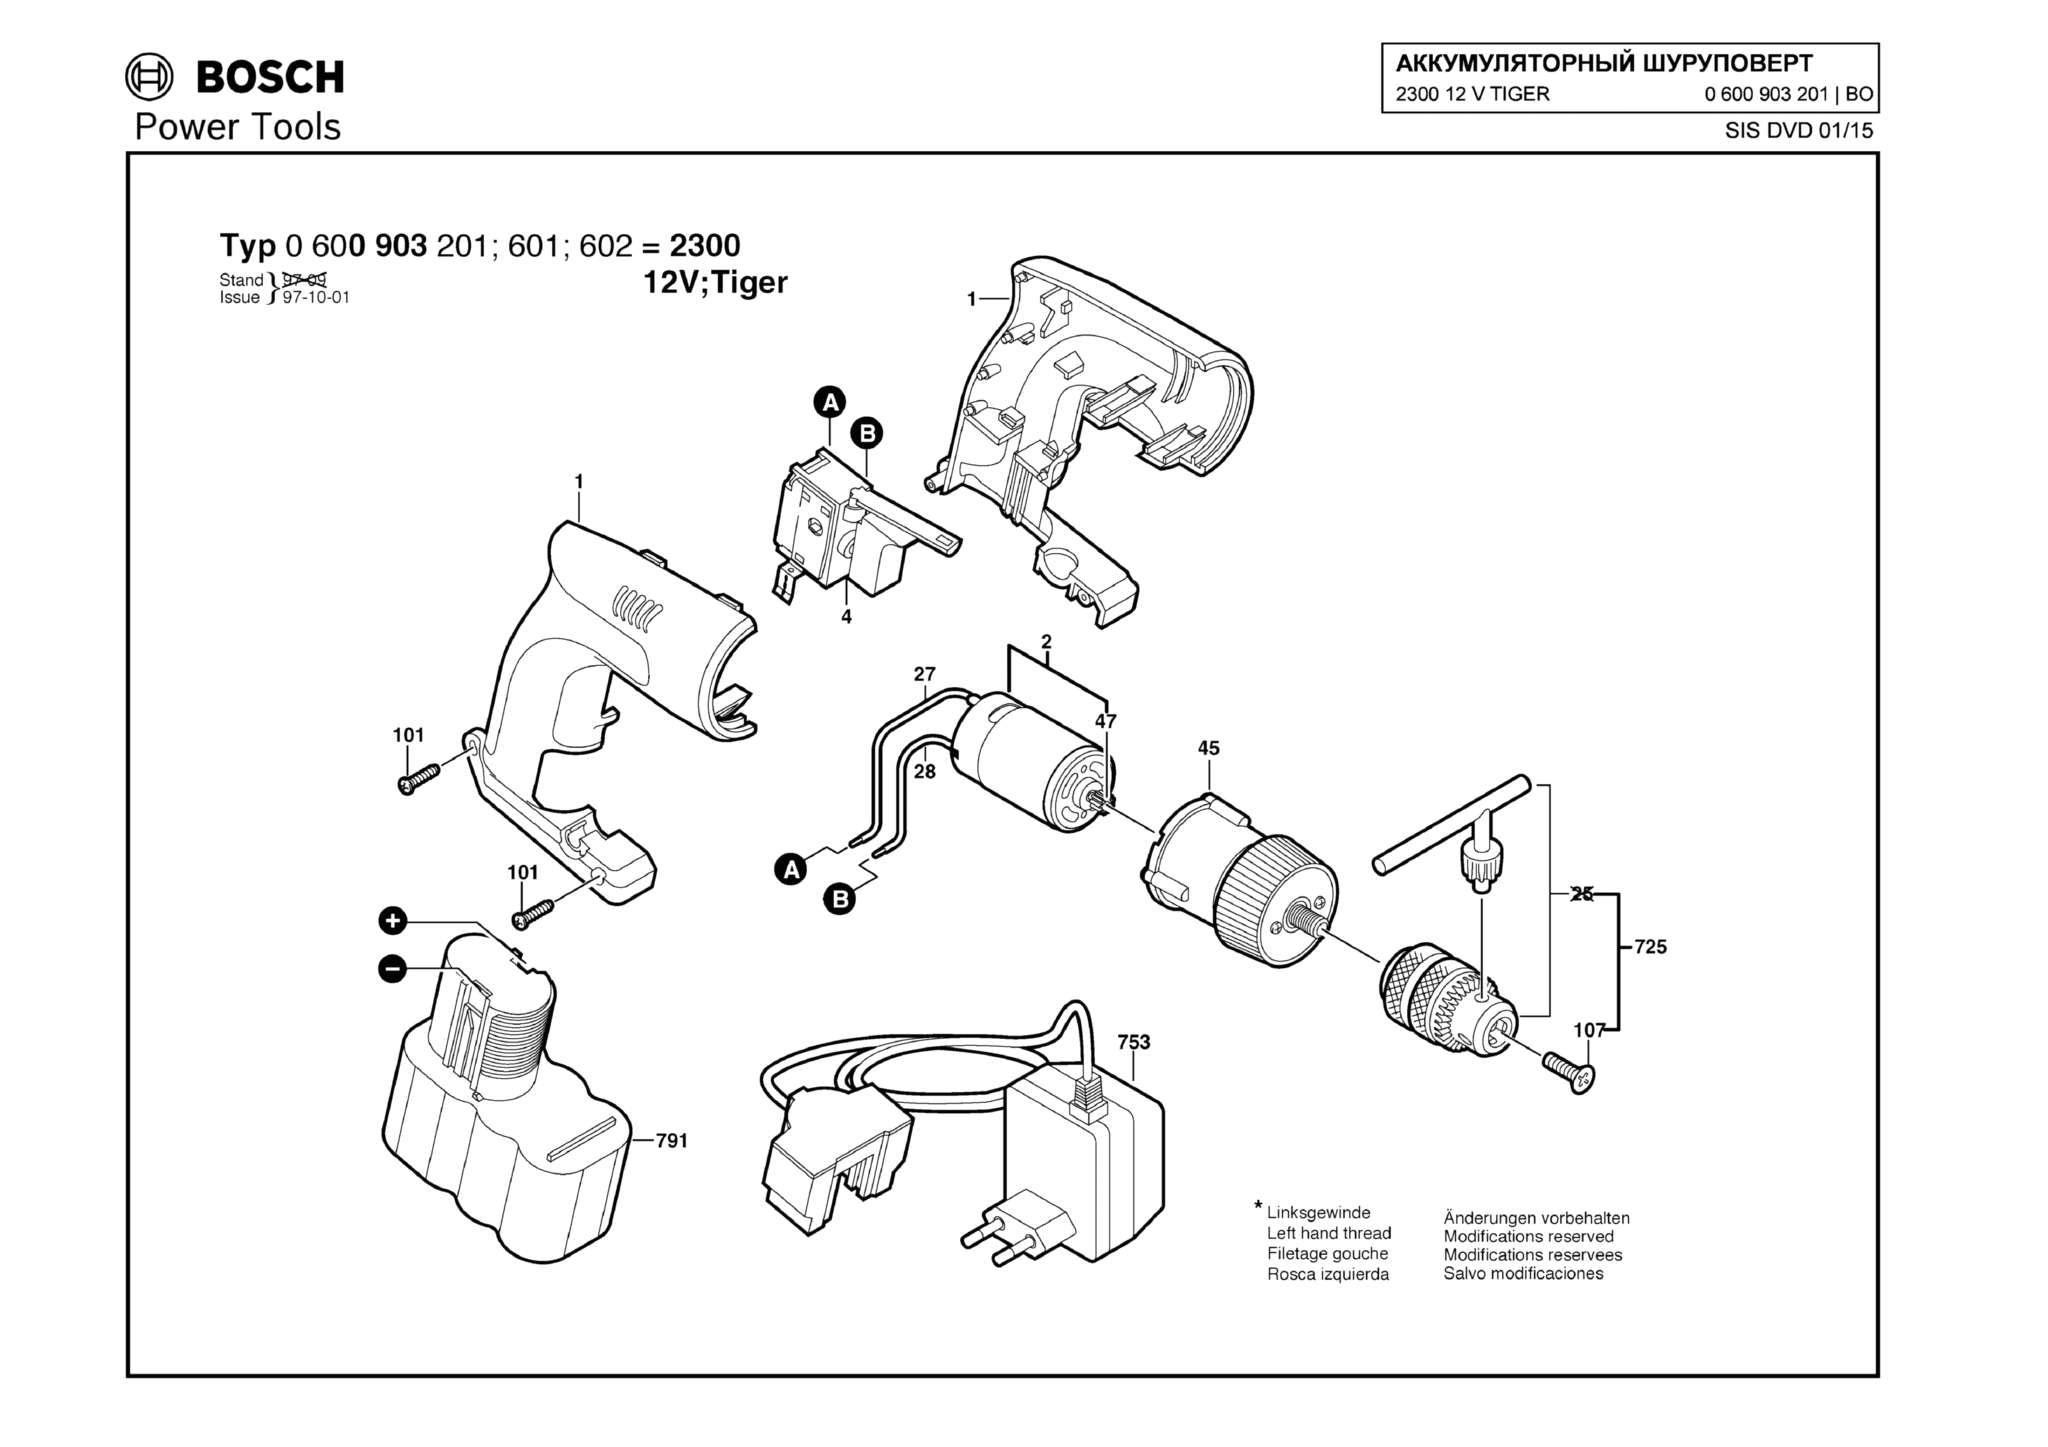 Запчасти, схема и деталировка Bosch 2300 12 V TIGER (ТИП 0600903201)